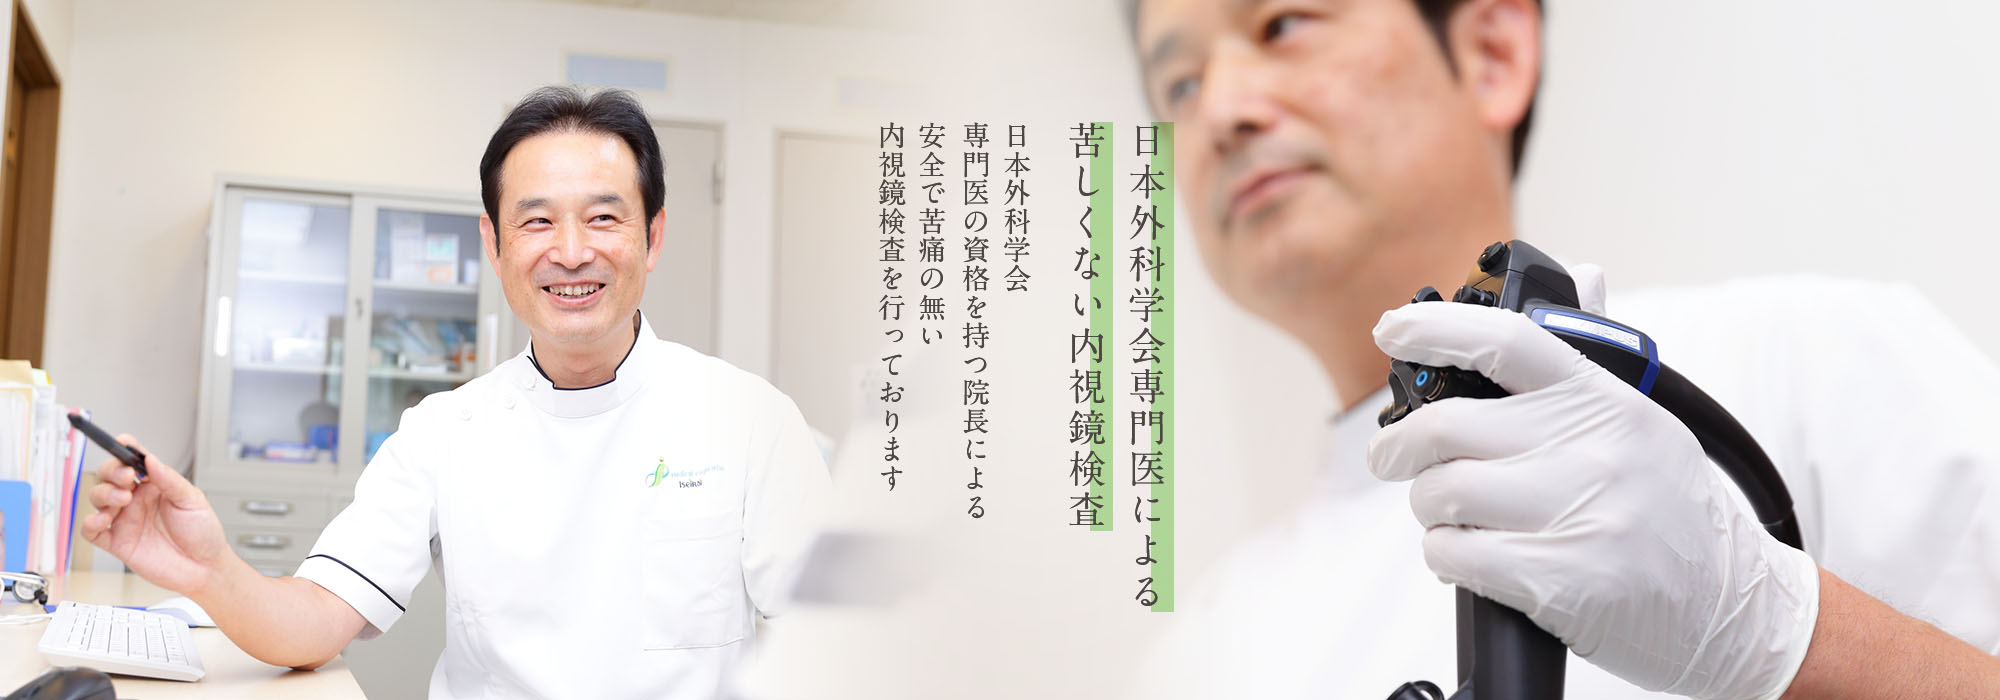 内視鏡専門医による苦しくない内視鏡検査 日本消化器内視鏡学会専門医の資格を持つ院長による安全で苦痛の無い内視鏡検査を行っております